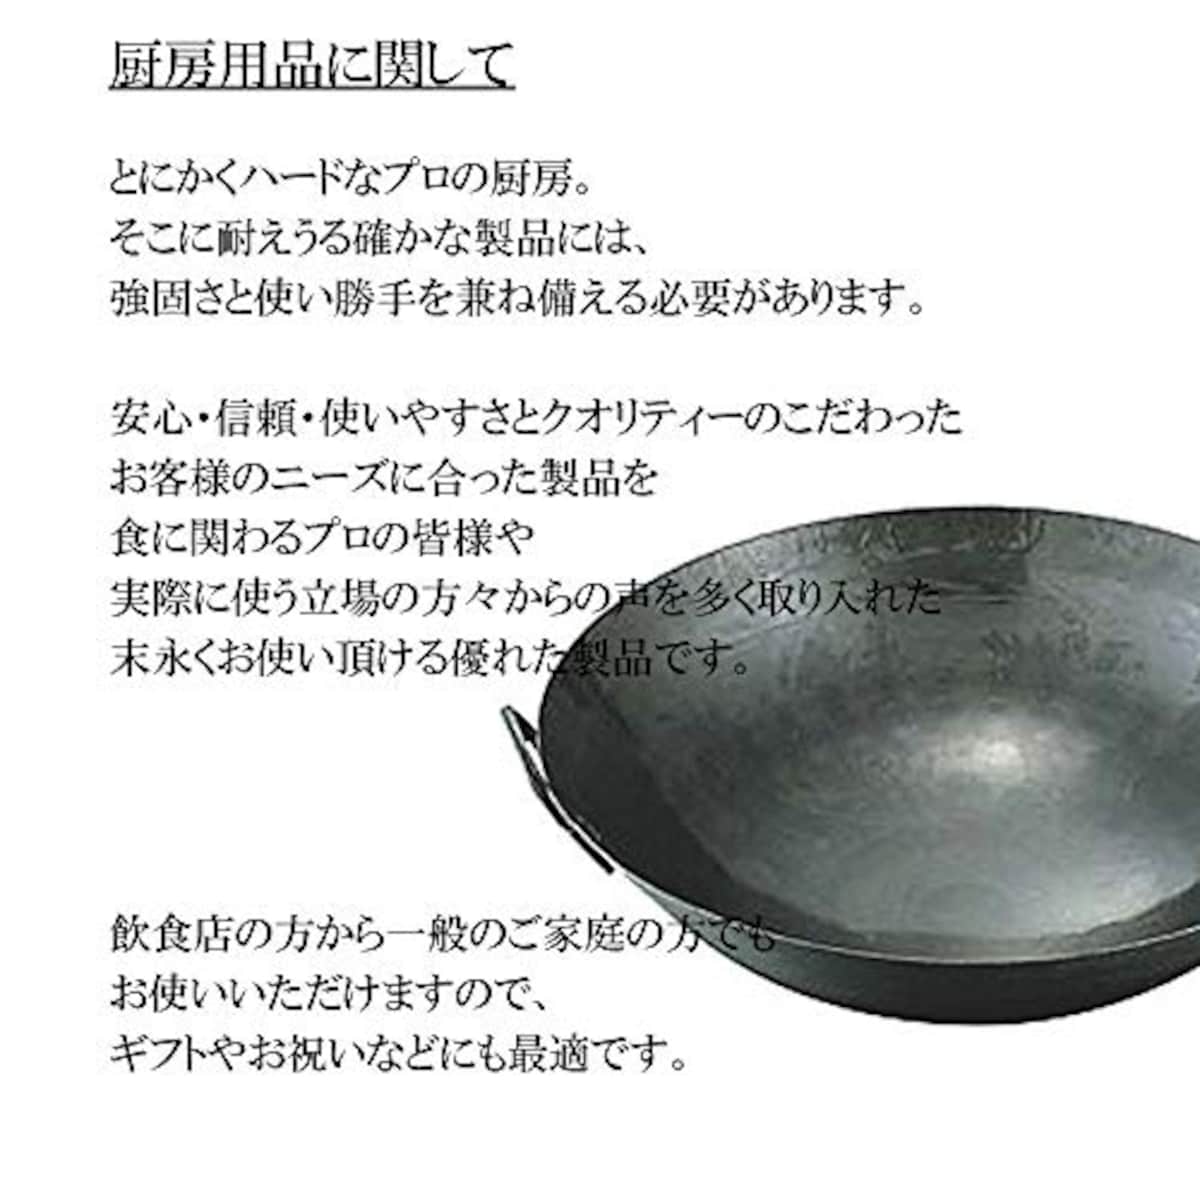  マイスタープレミアムフライパン 20cm [ 20cm 470g ] [ フライパン ] | 厨房 キッチン 台所 調理 業務用画像2 